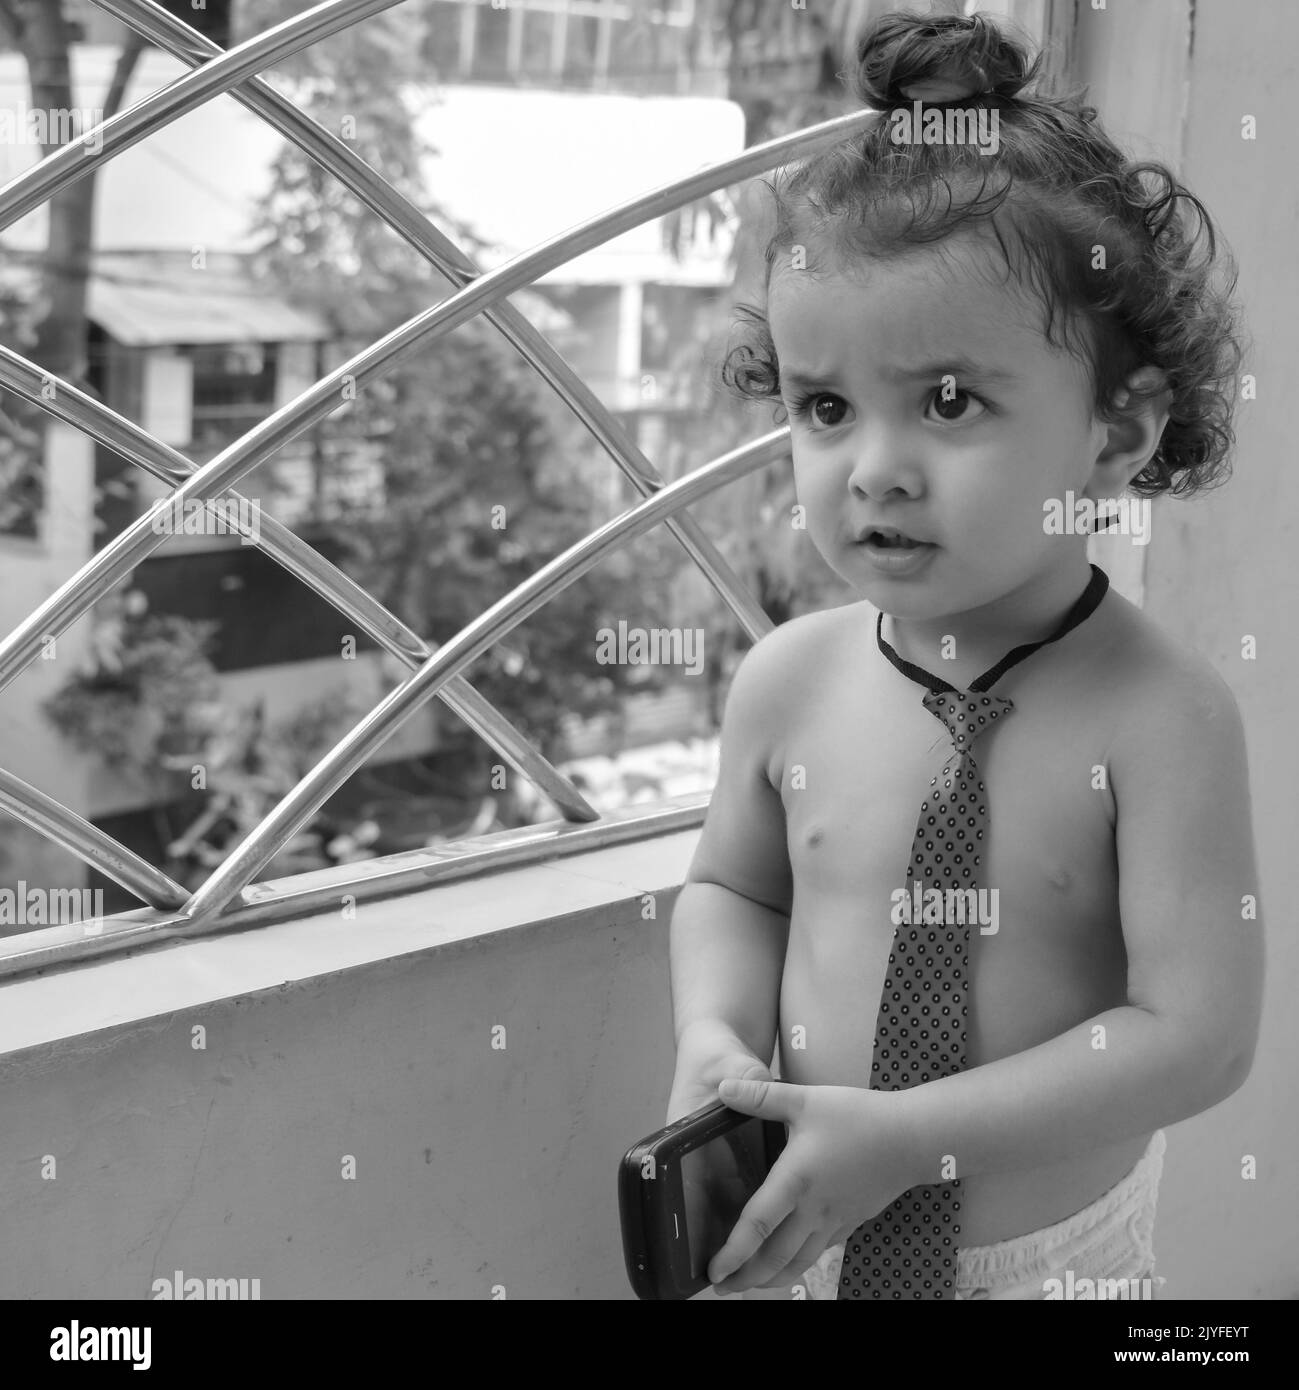 Zaffa Shivaay piccolo carino nel balcone di casa durante l'estate, fotoshoot piccolo dolce del ragazzo durante la luce di giorno, bambino godendo a casa durante il pho Foto Stock